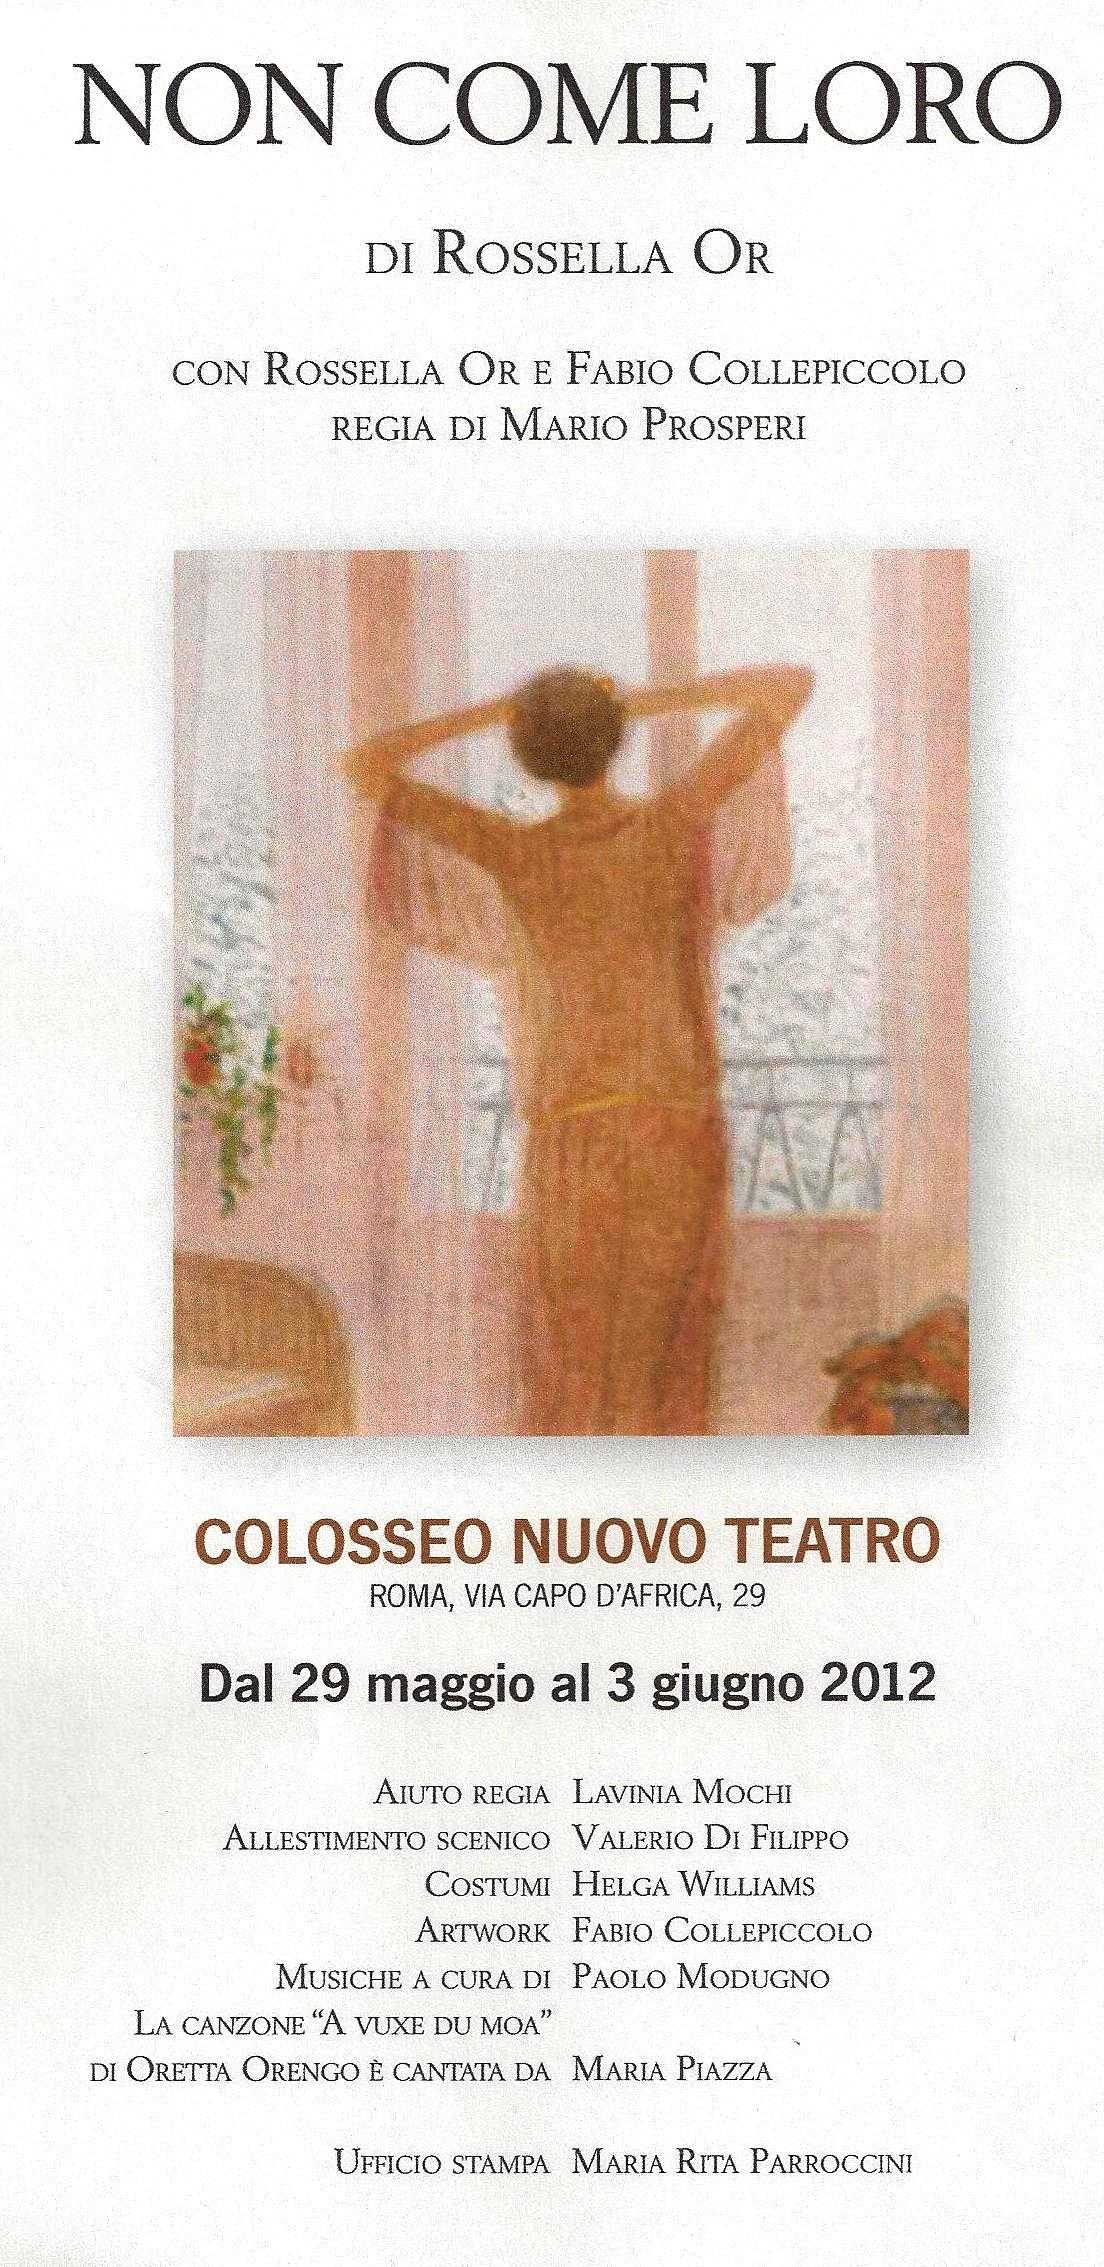 Non come loro di Rossella Or dal 29 maggio al Colosseo Nuovo Teatro di Roma